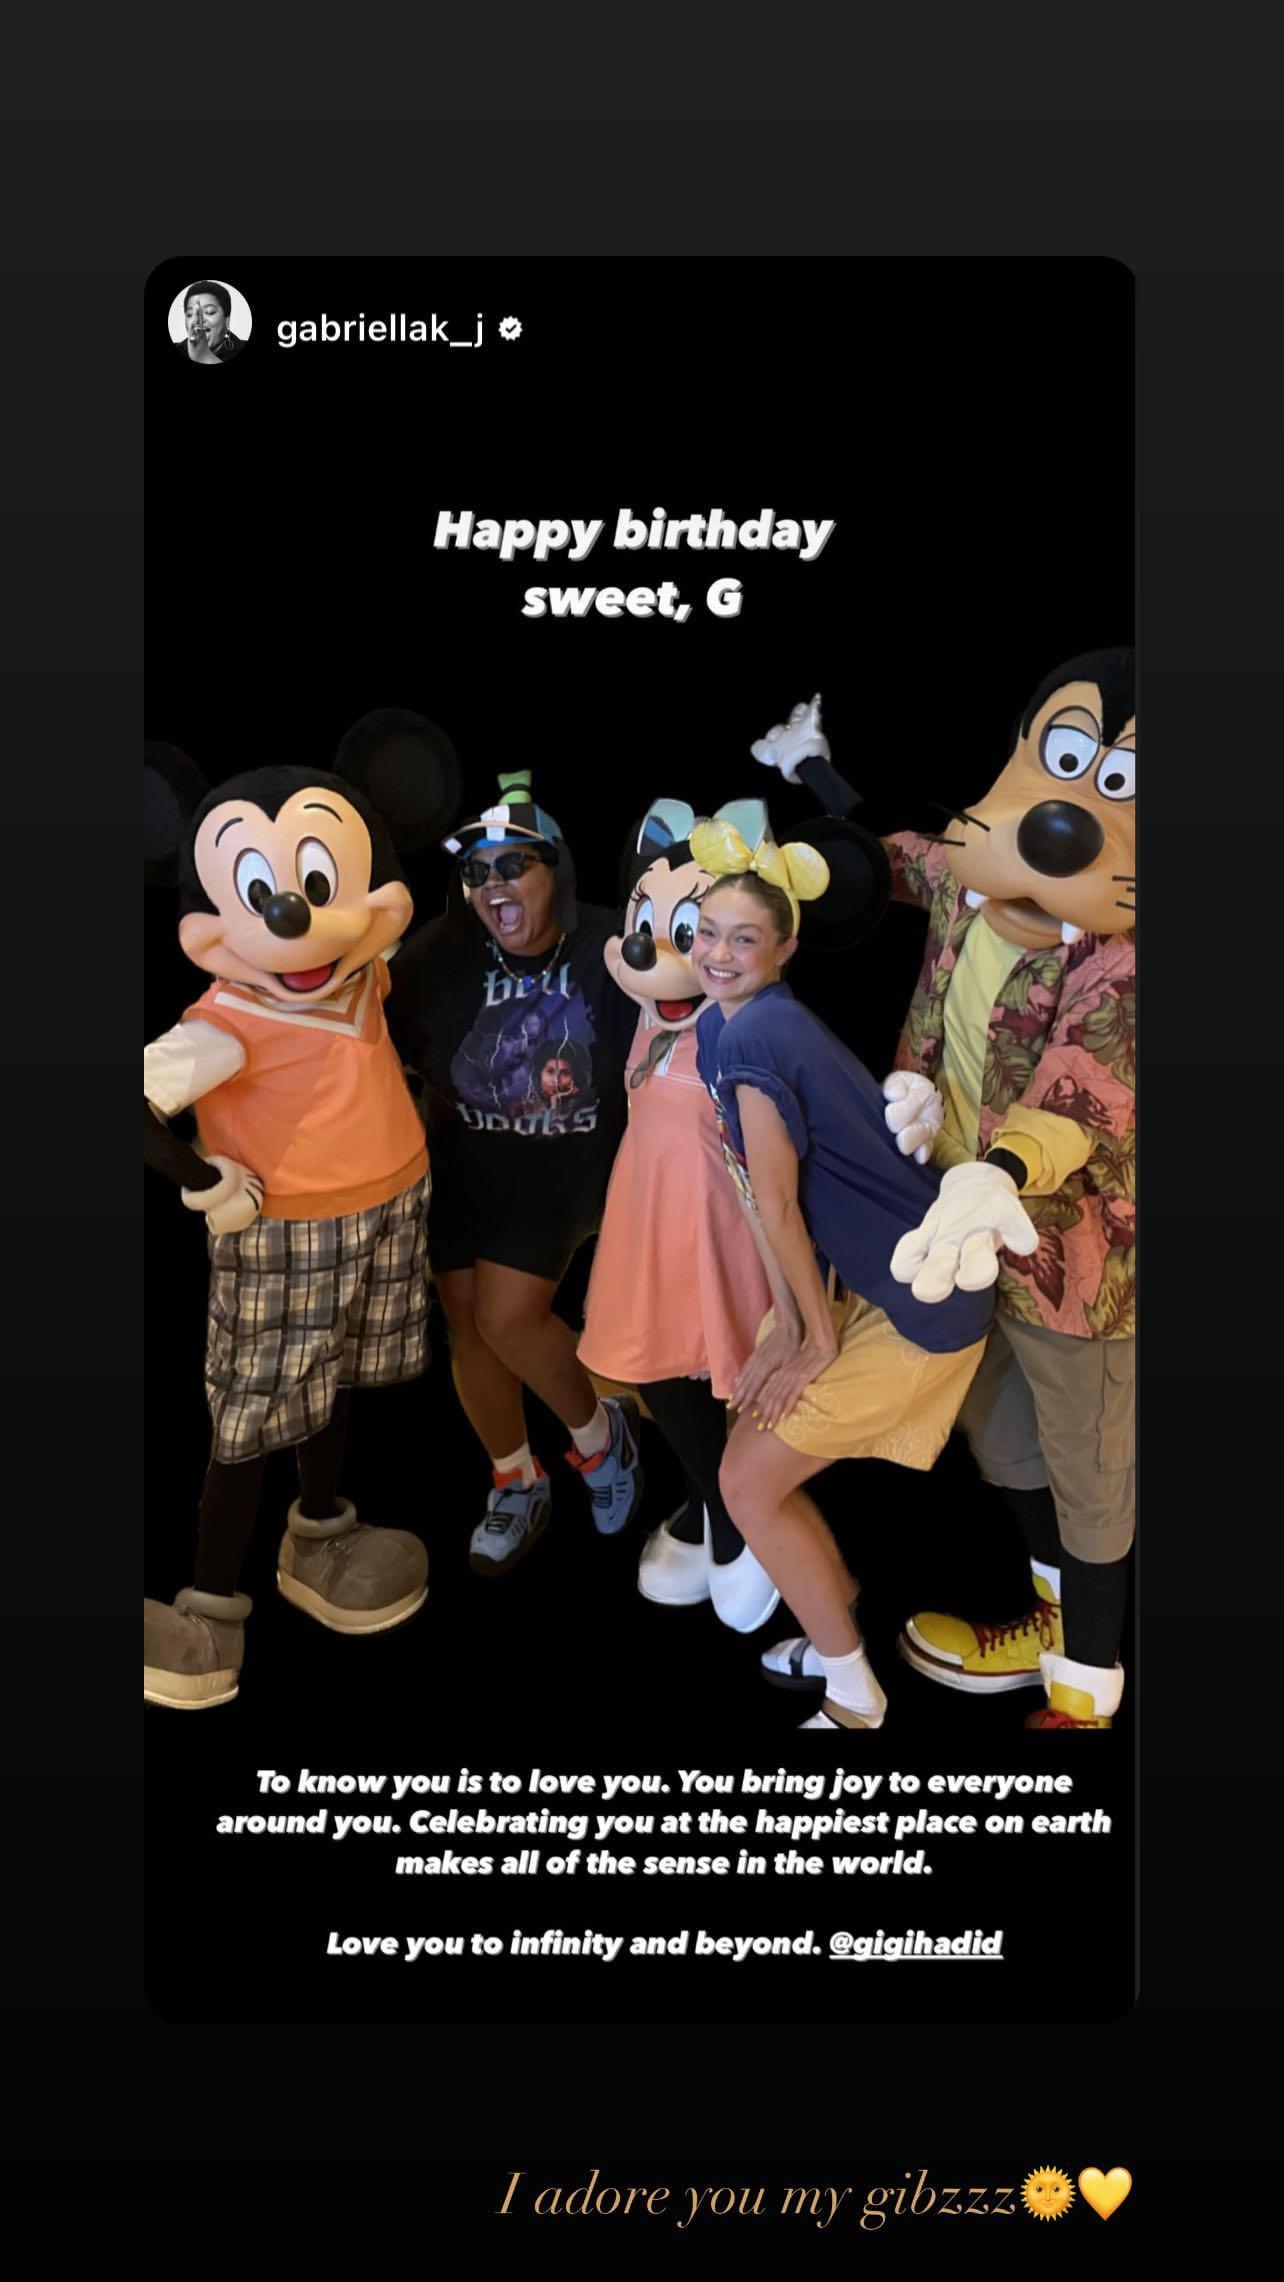 Gigi Hadid Morphs Into Singing Disney Princess For Birthday Wish